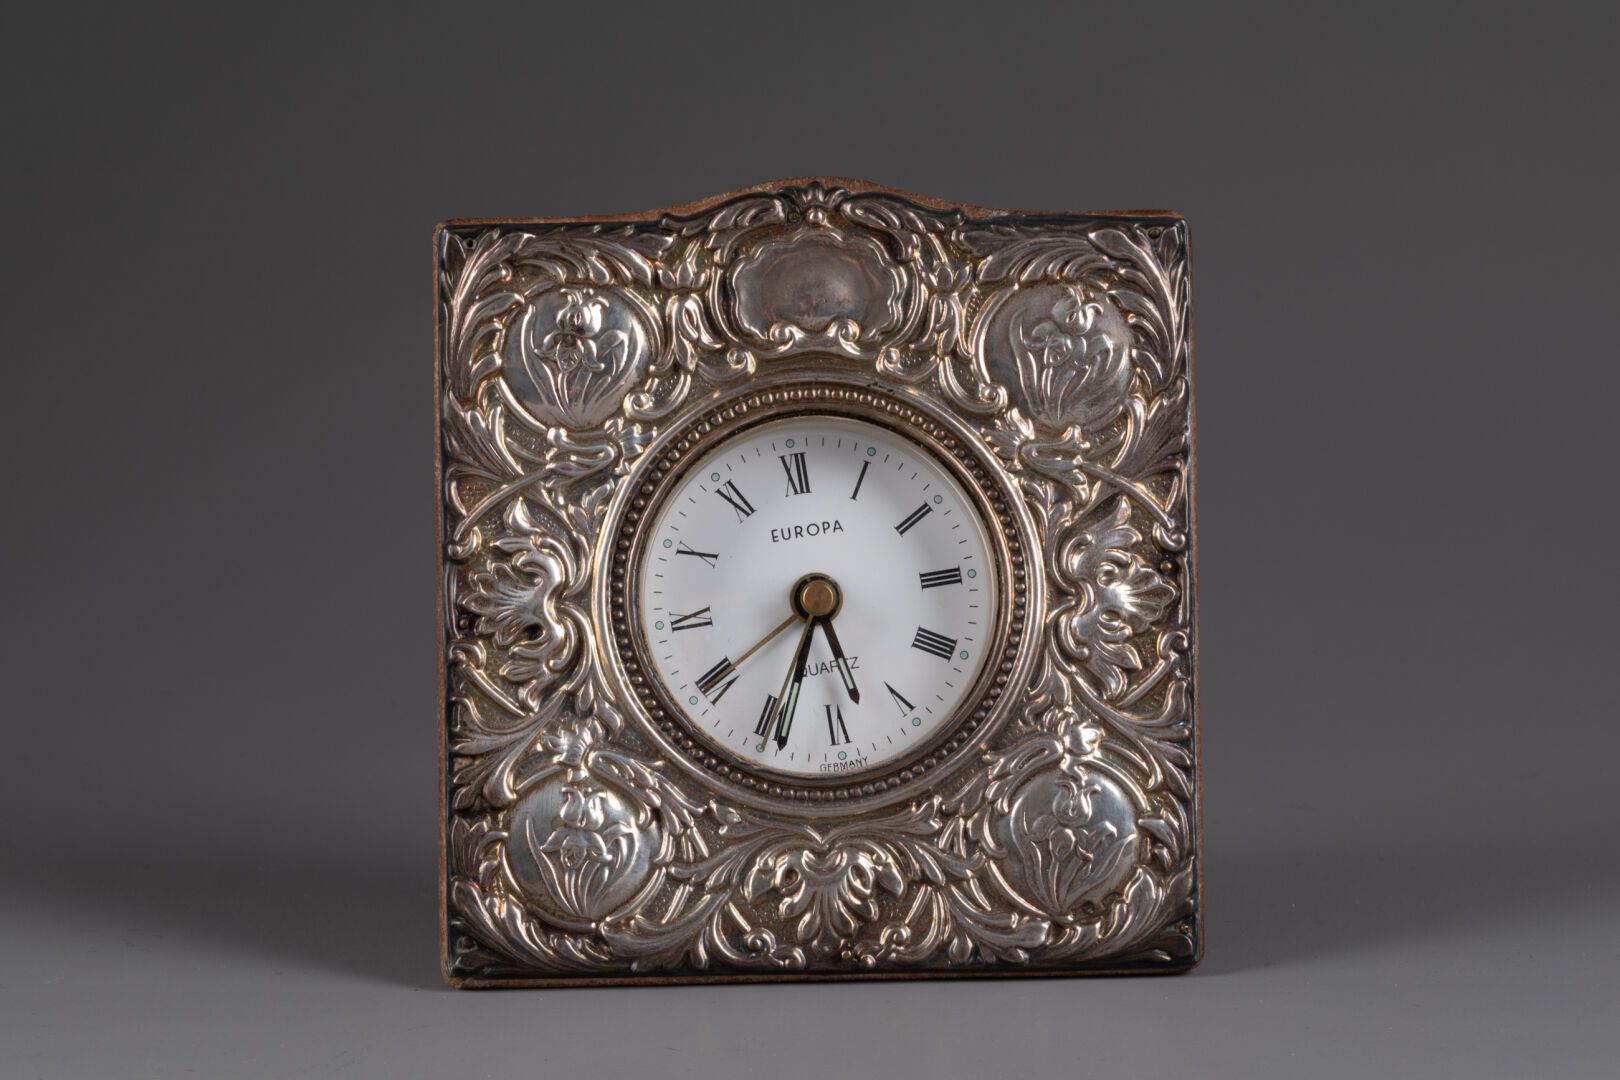 EUROPA 带花饰的小钟 
表盘以罗马数字显示小时 
银质浮雕，四分之一机芯